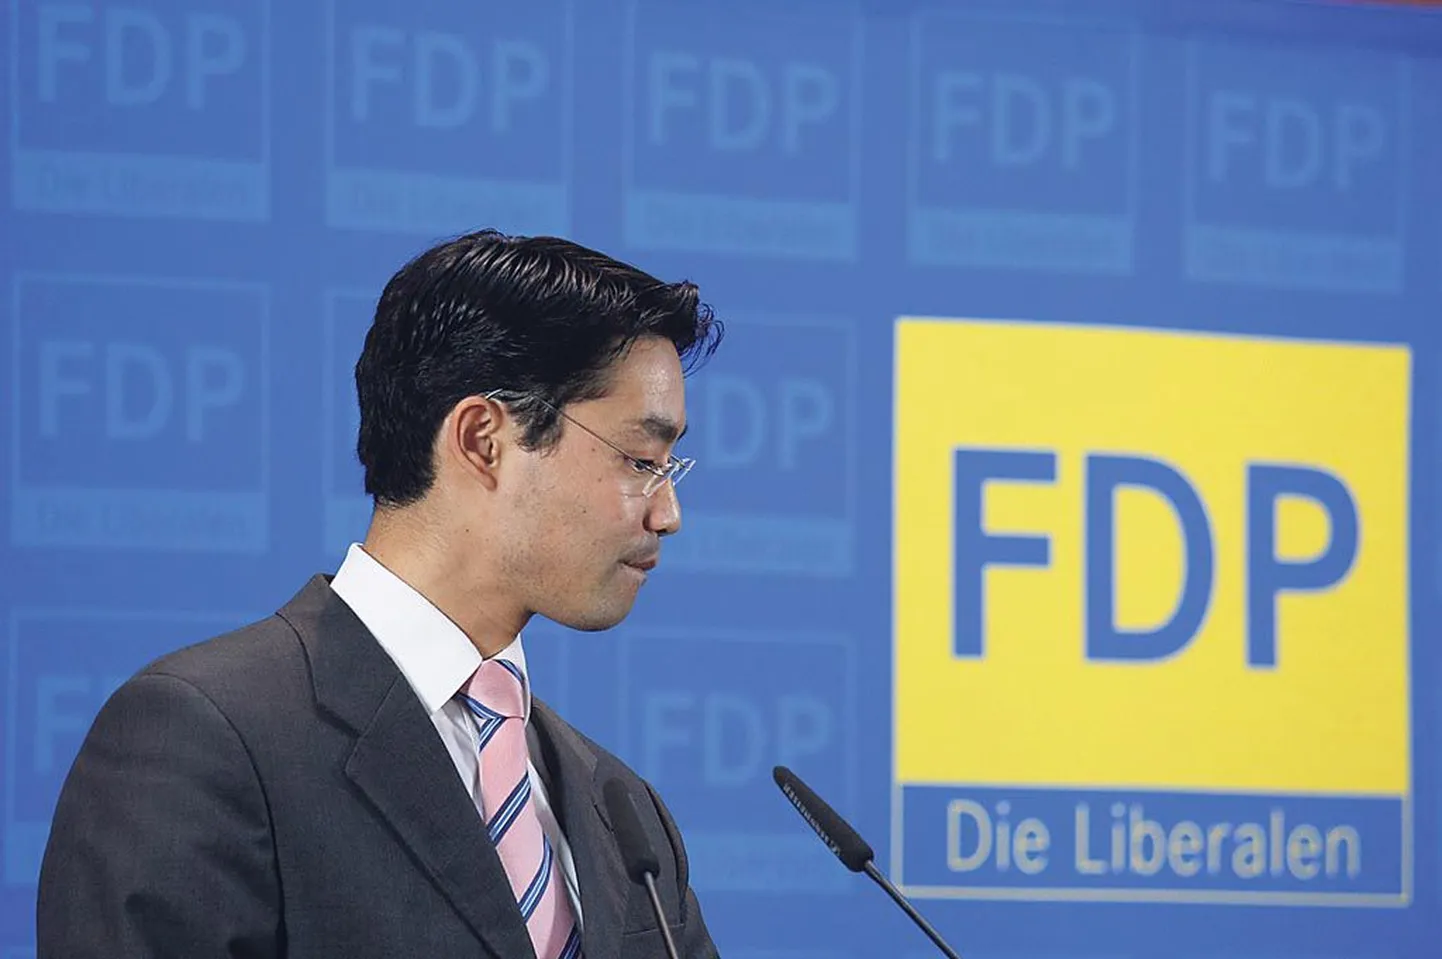 Philipp Rösleril (pildil) ei õnnestu päästa vabade demokraatide erakonda (FDP), mille ta võttis hiljuti üle liiduvälisminister Guido Westerwellelt. FDP juhtkond mängib tragikomöödiat, mis muutub tragöödiaks.